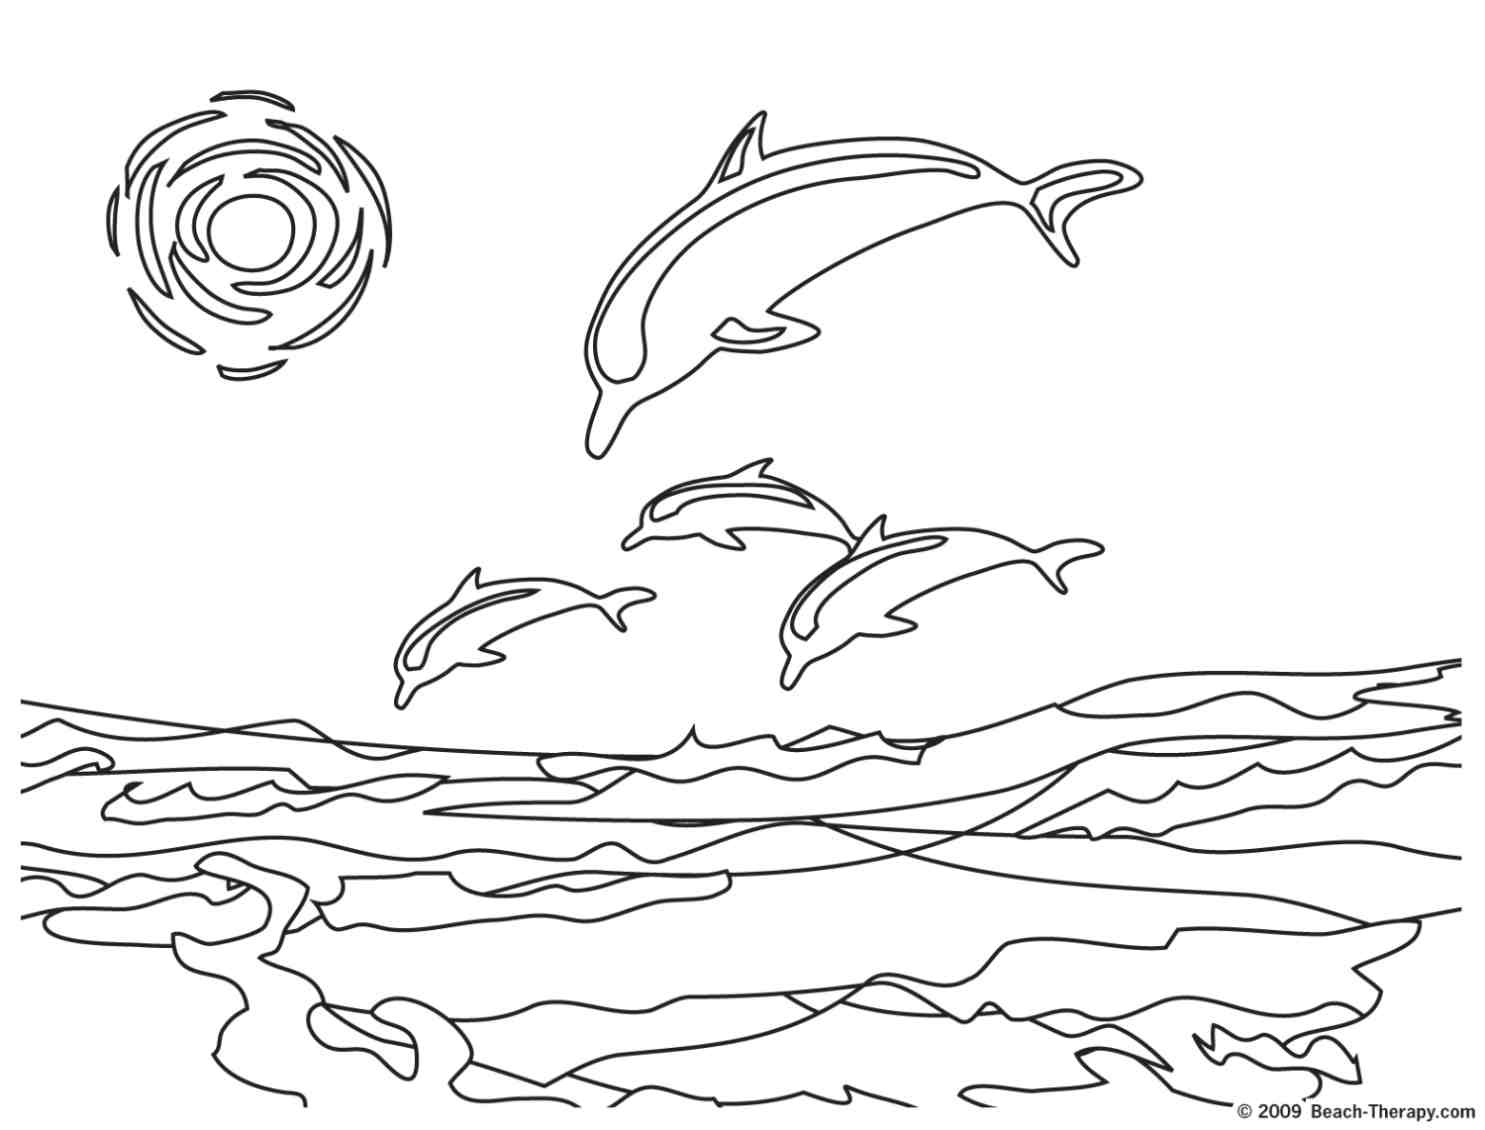 dauphins qui plongent dans la mer